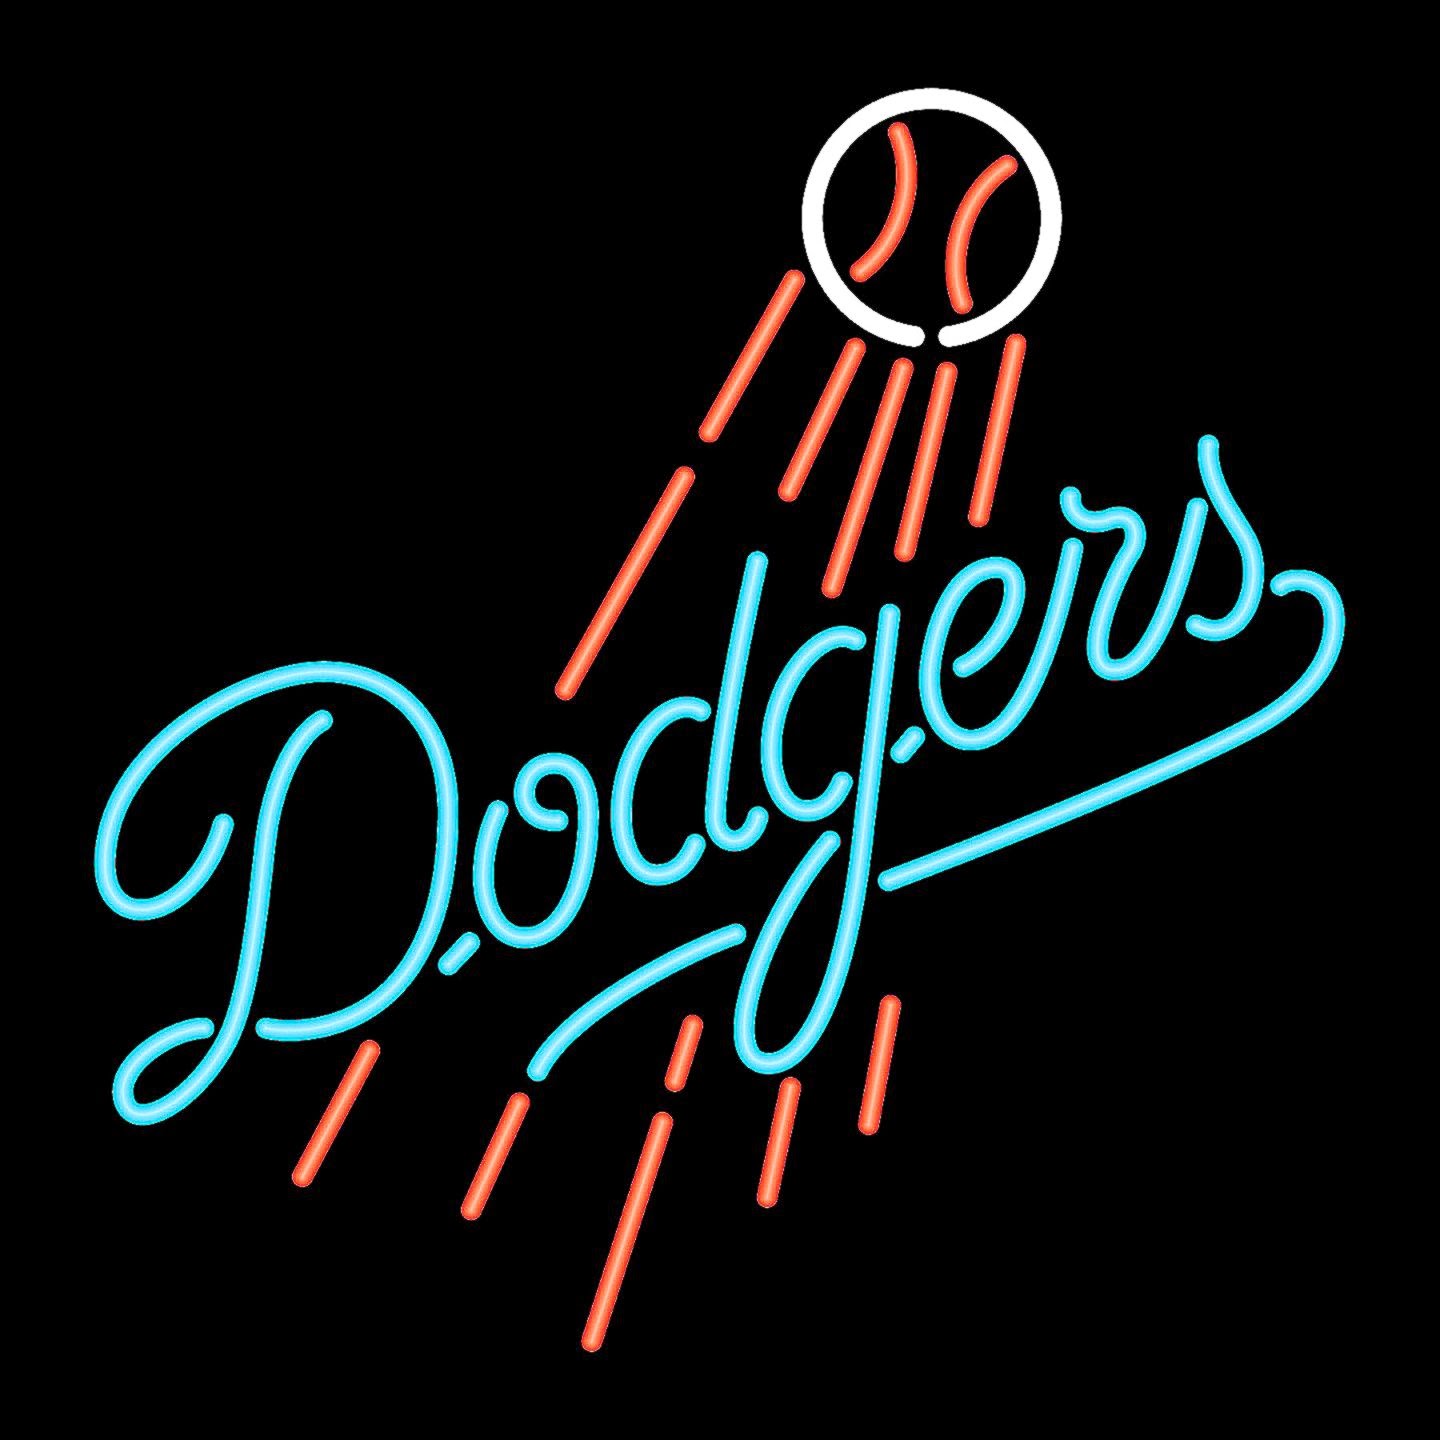 Dodgers Wallpaper Description Angeles